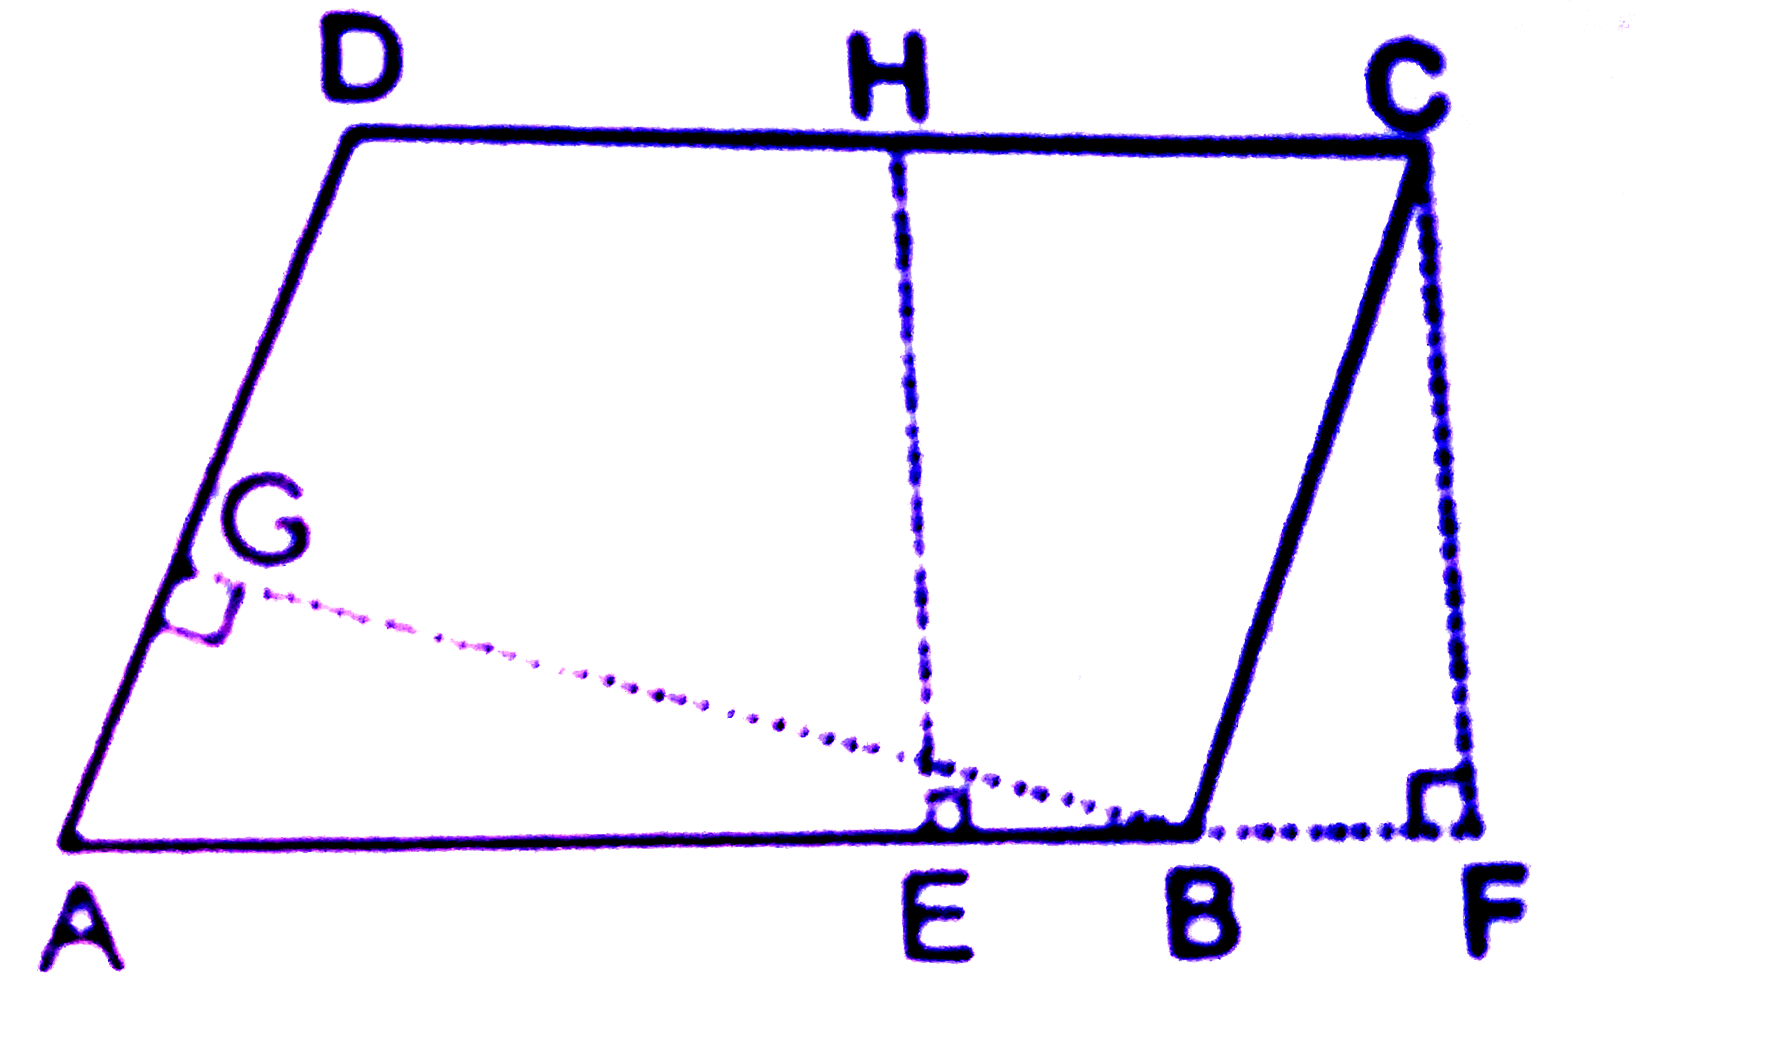 बगल के चित्र में ABCD एक समांतर चतुर्भुज है|रेखाखण्ड EHbot  भुजा DC , रेखाखण्ड CFbot   बढ़ी हुई भुजा AB तथा रेखाखण्ड BGbot  भुजा DA यदि AB =16 सेमि EH =8 सेमि तथा BG =10 सेमि हो तो AD ज्ञात करें|